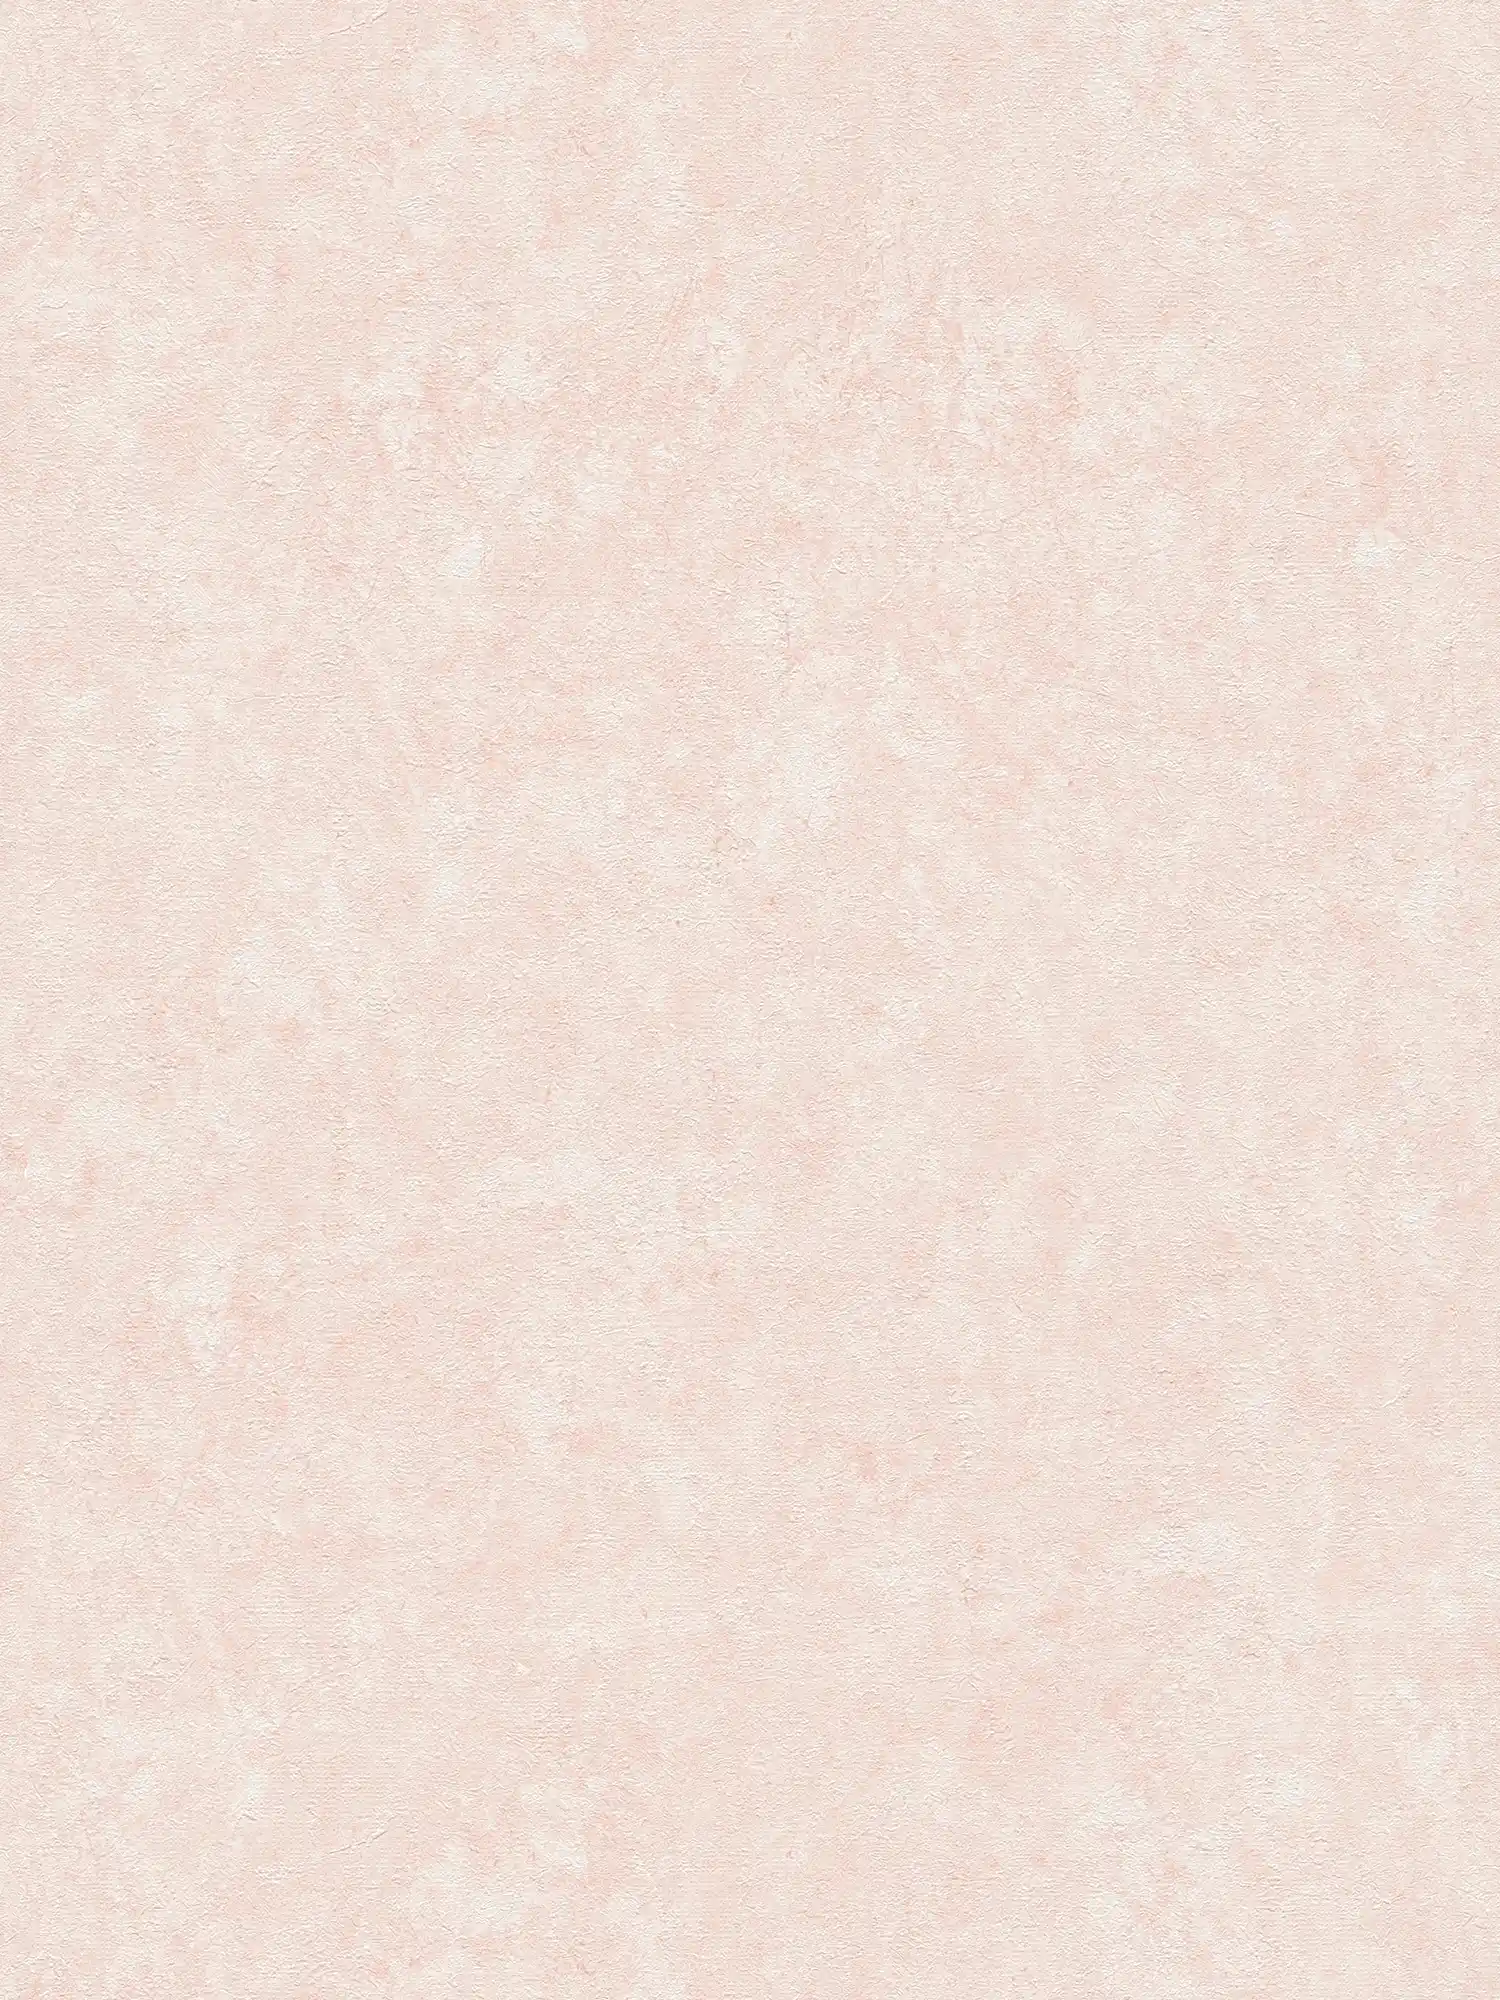 Einfarbige Tapete mit Strukturtapete in dezenter Farbe – Weiß, Rosa
